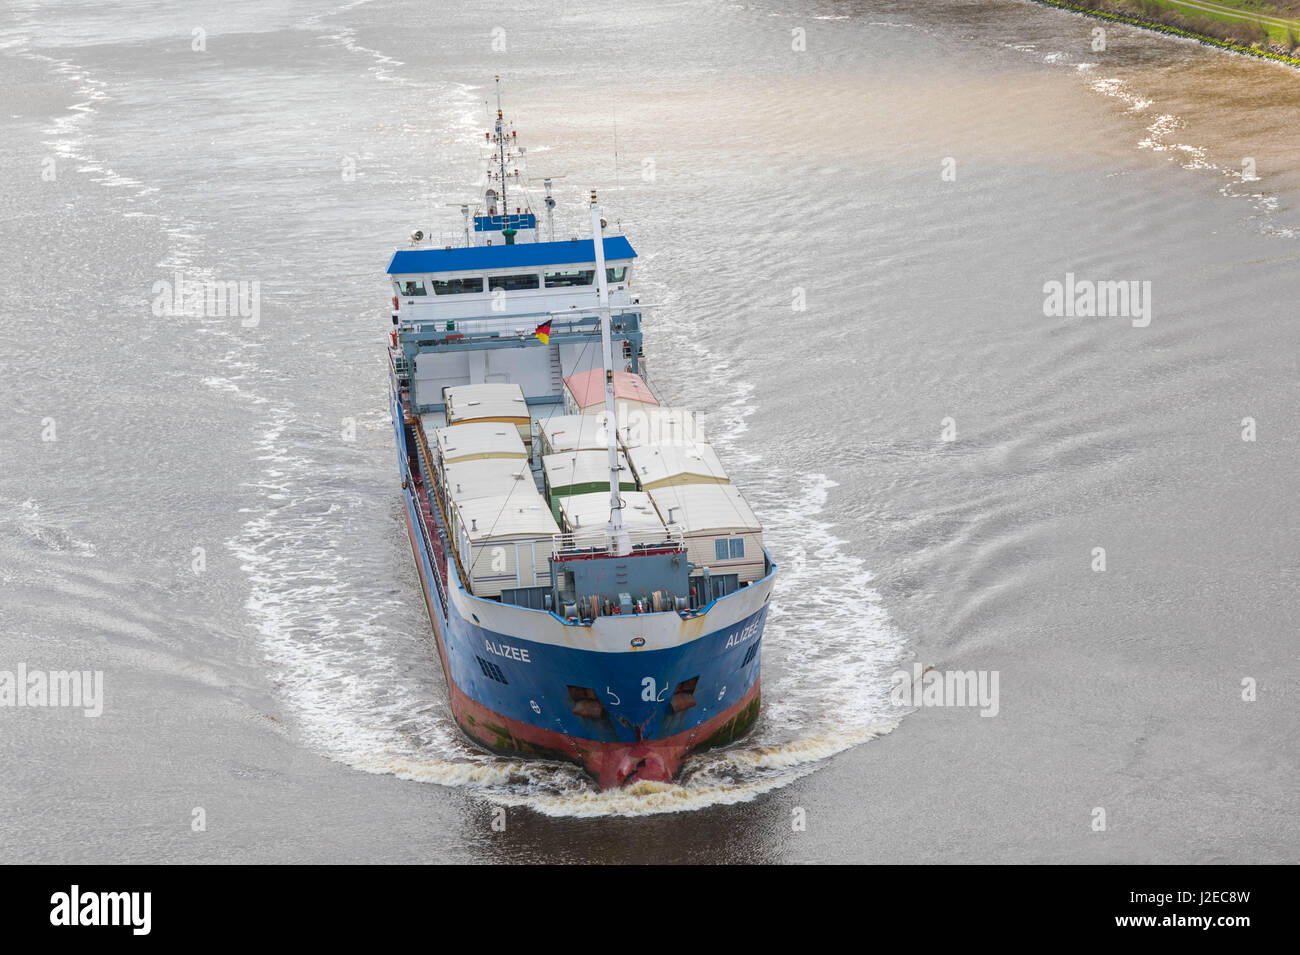 Albersdorf, Allemagne, le 15 avril 2017, Transports navire 'Alizee' dans la mer du Nord Mer Baltique, canal en langue allemande Nord - Ostsee Kanal Banque D'Images